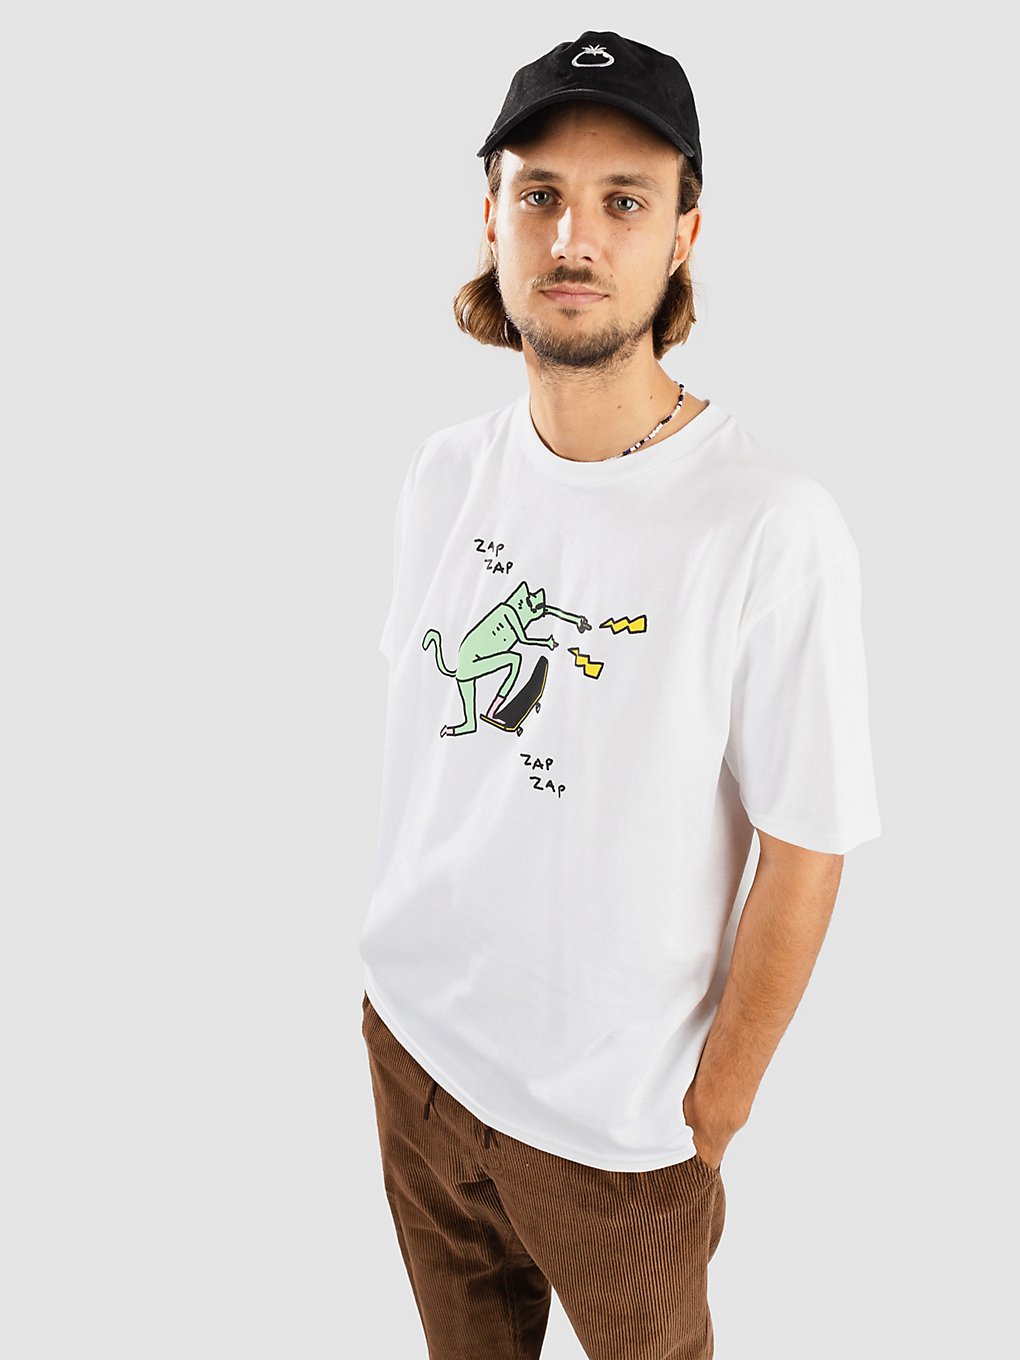 Leon Karssen Zapzap T-Shirt white kaufen